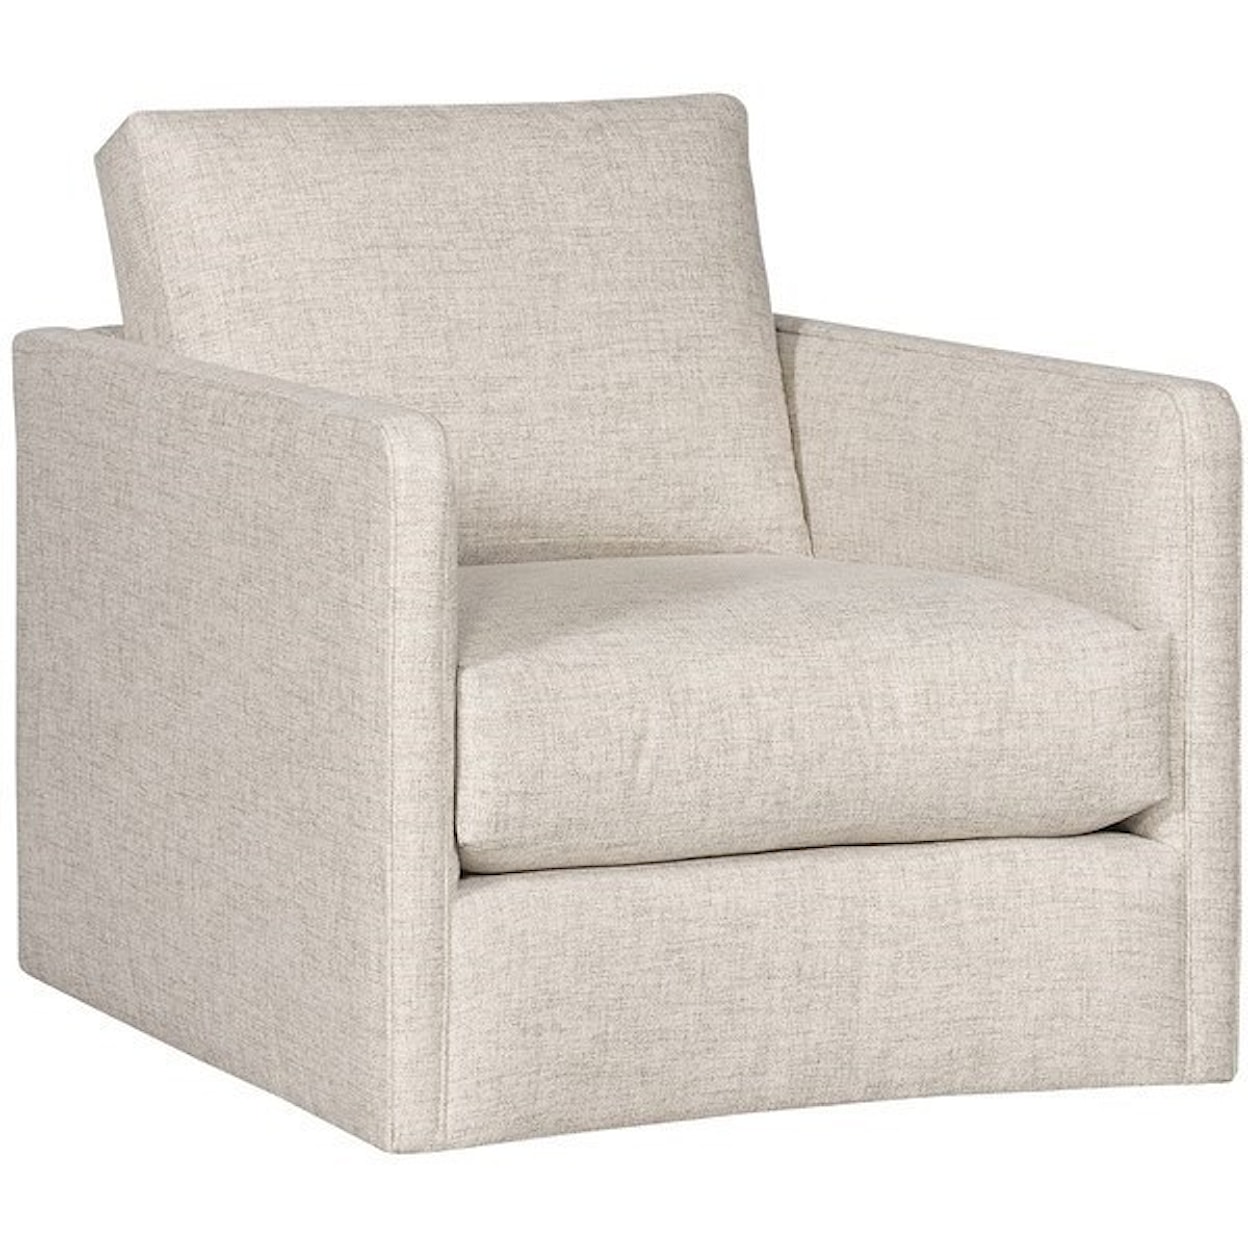 Vanguard Furniture Wynne - Ease Modern Swivel Chair